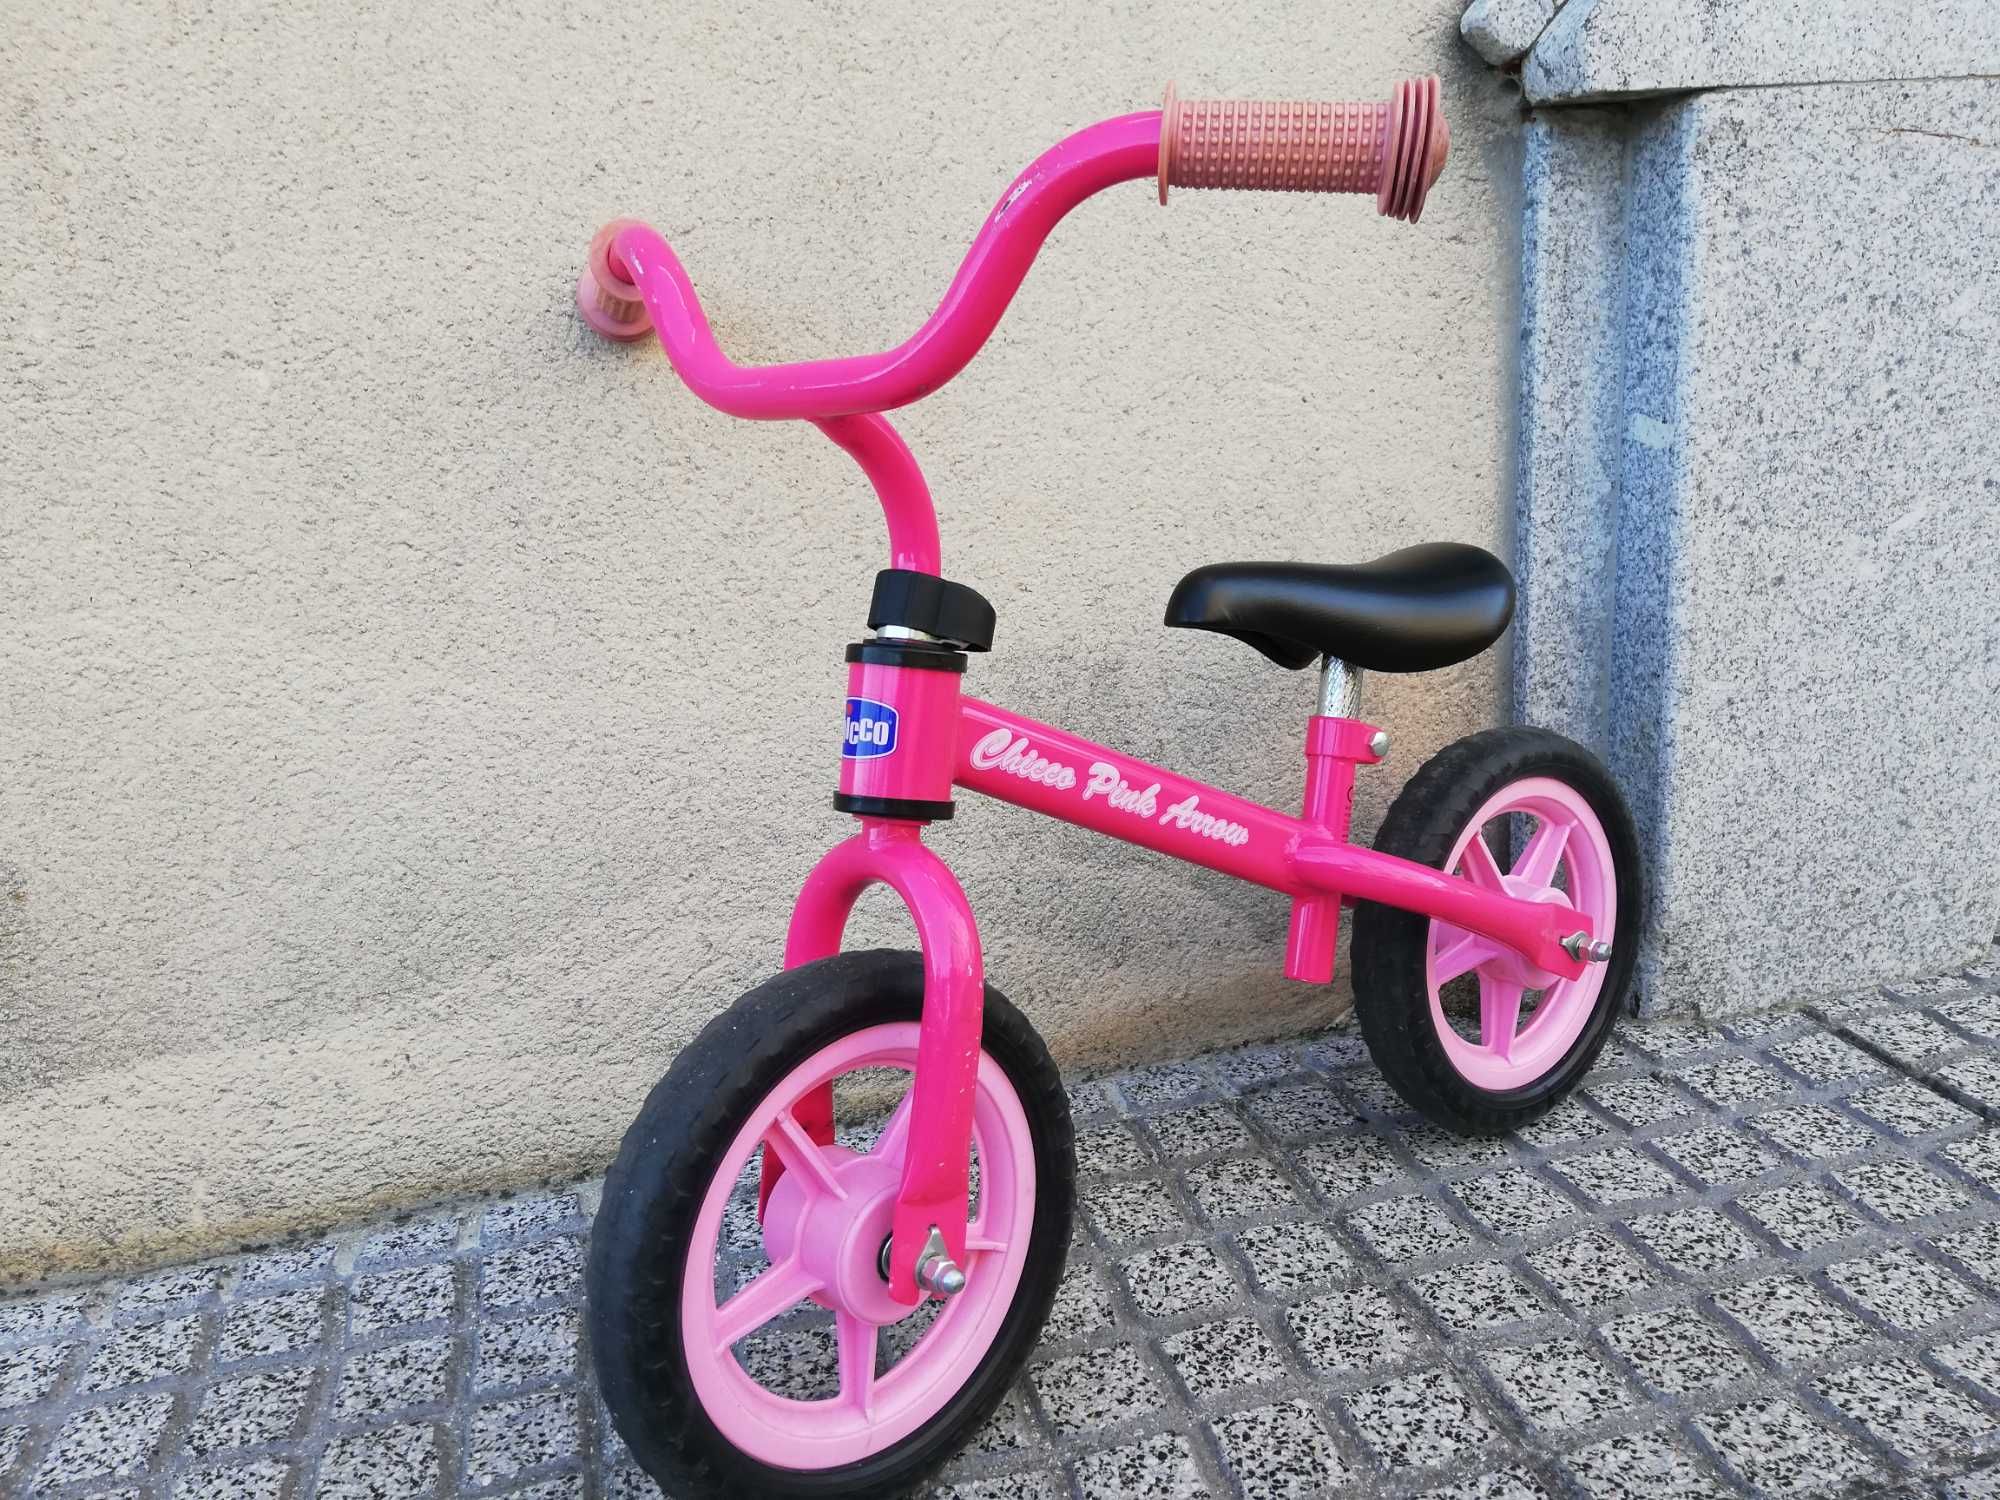 Bicicleta criança para treinar equilíbrio